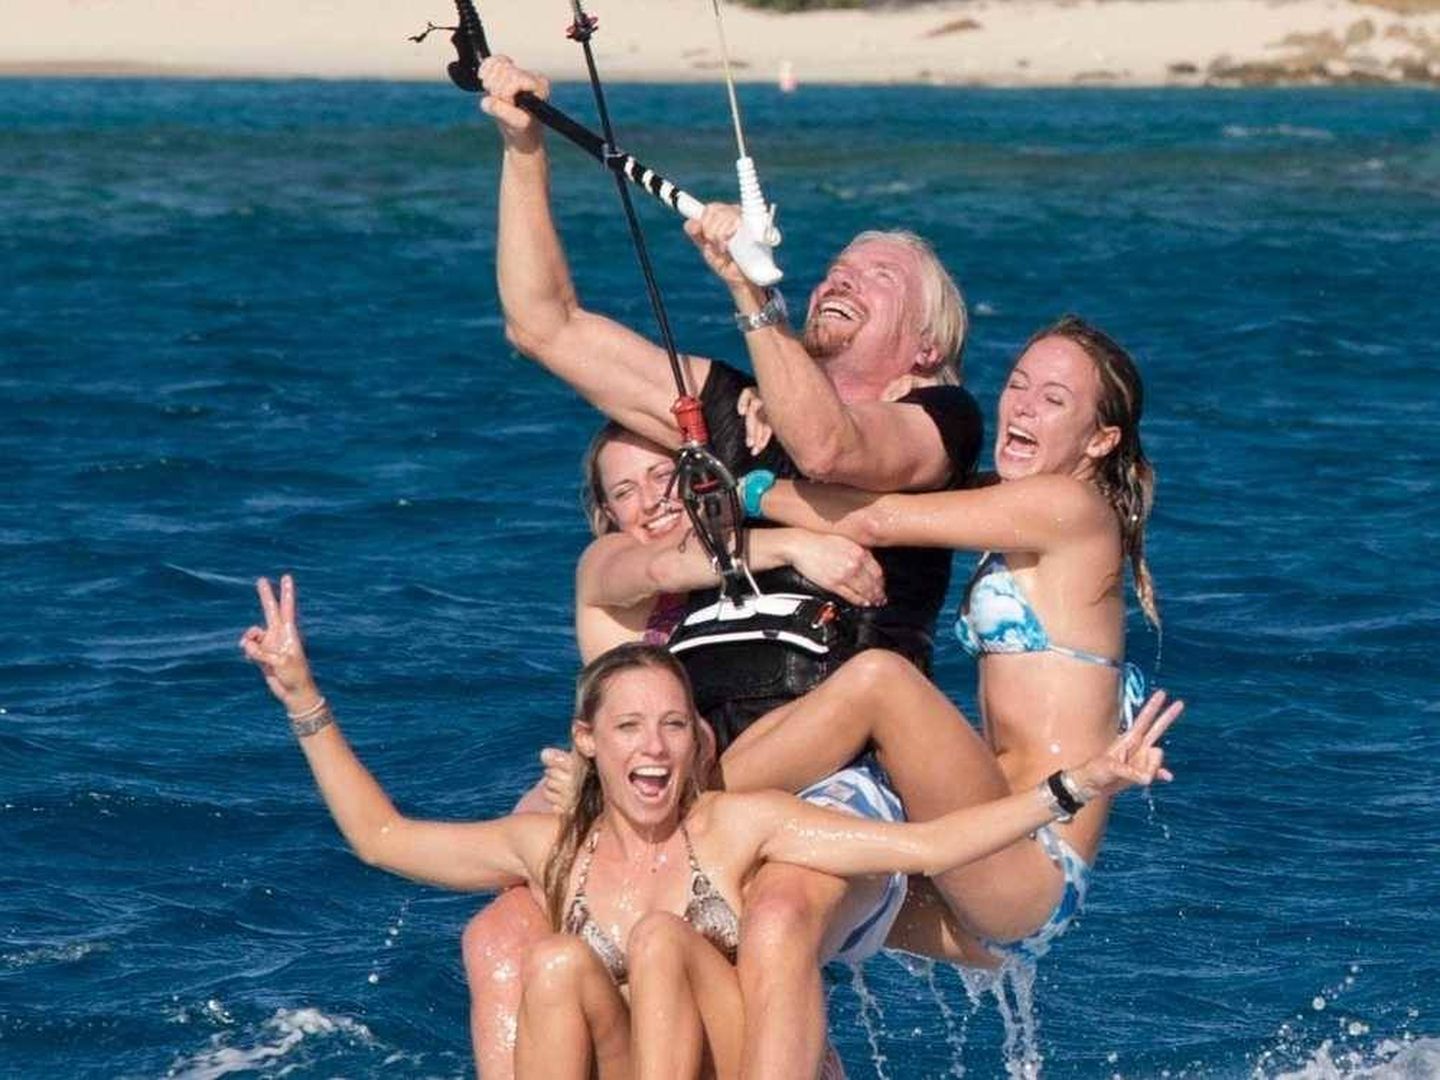 El millonario Richard Branson, amigo de Don Montague, disfrutando del... kitesurfing